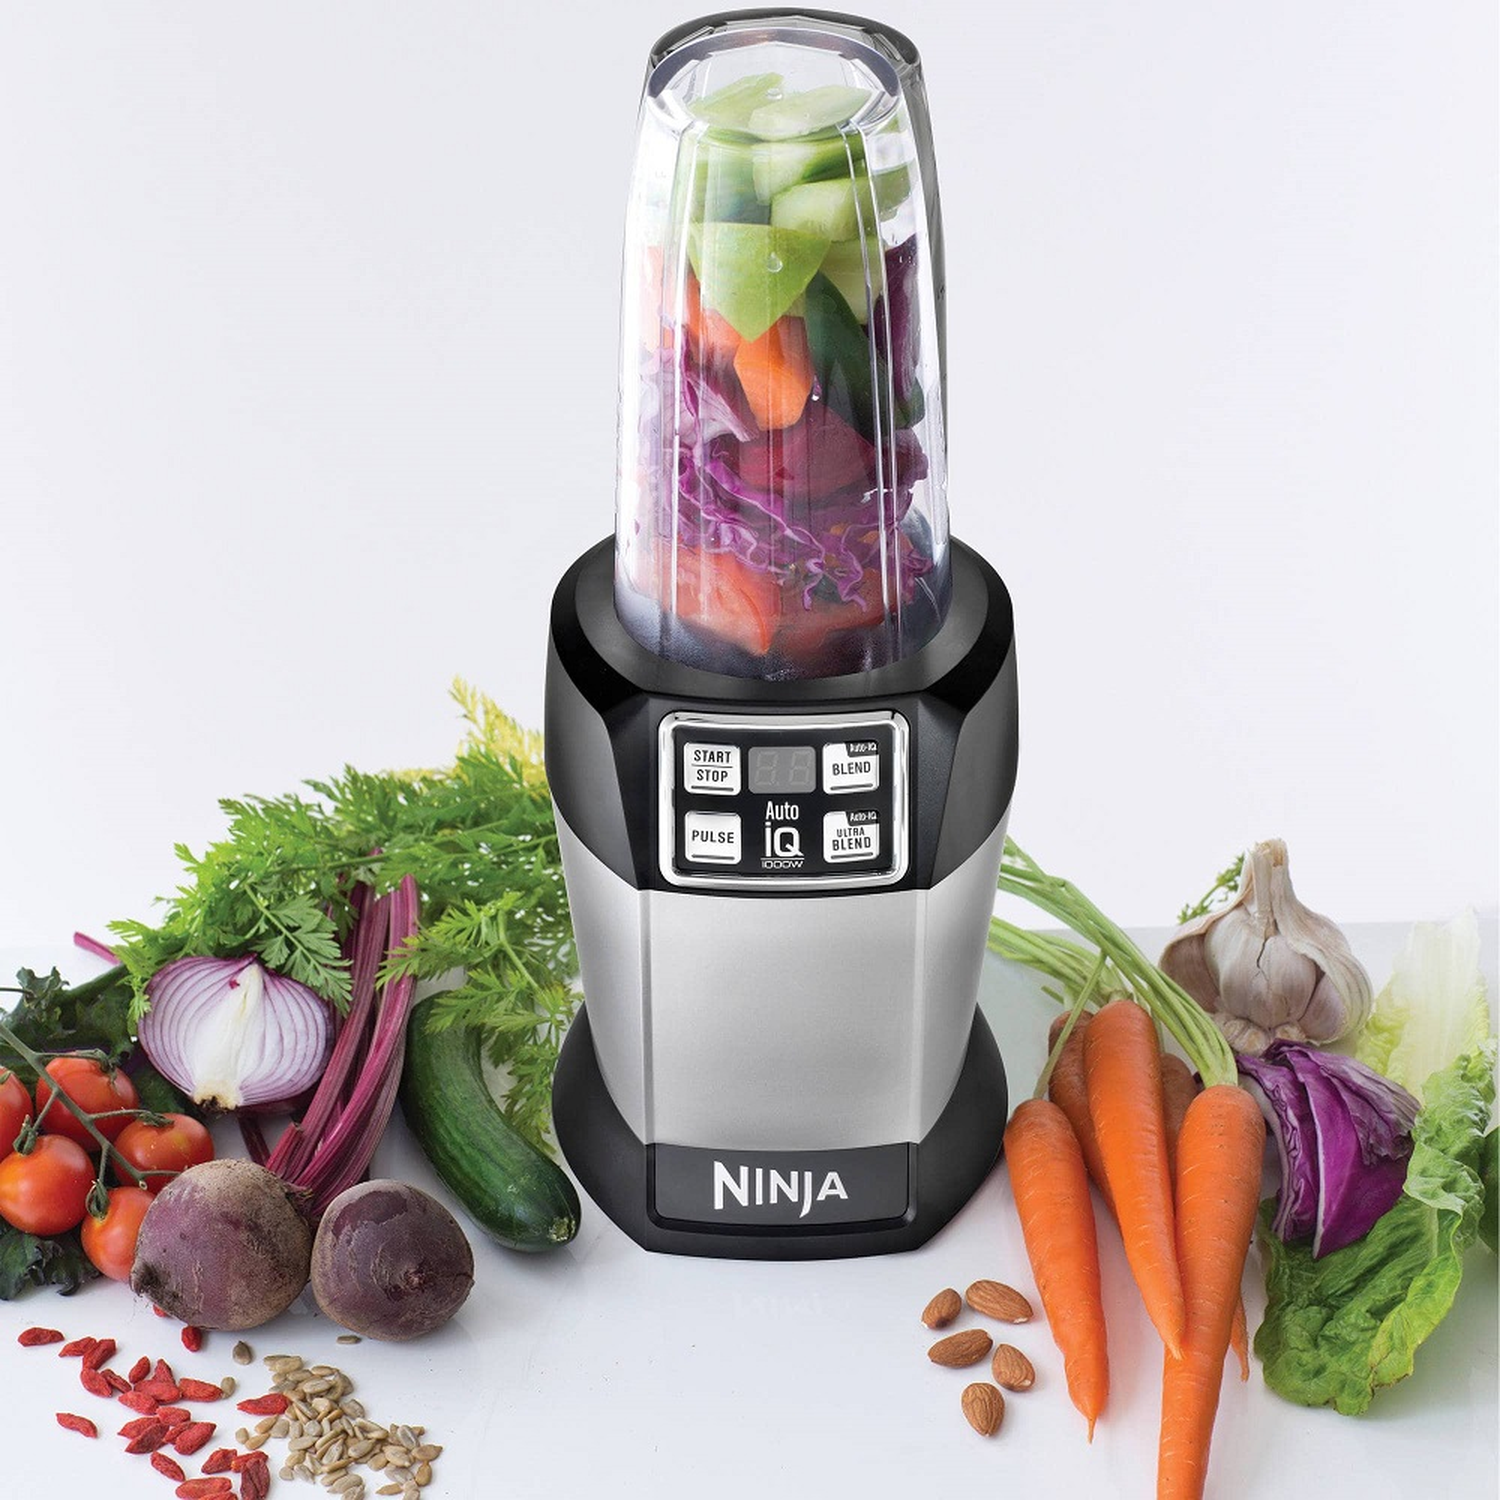 Extractores de nutrientes Nutri con 2 programas Auto-iQ - Ninja BL480D